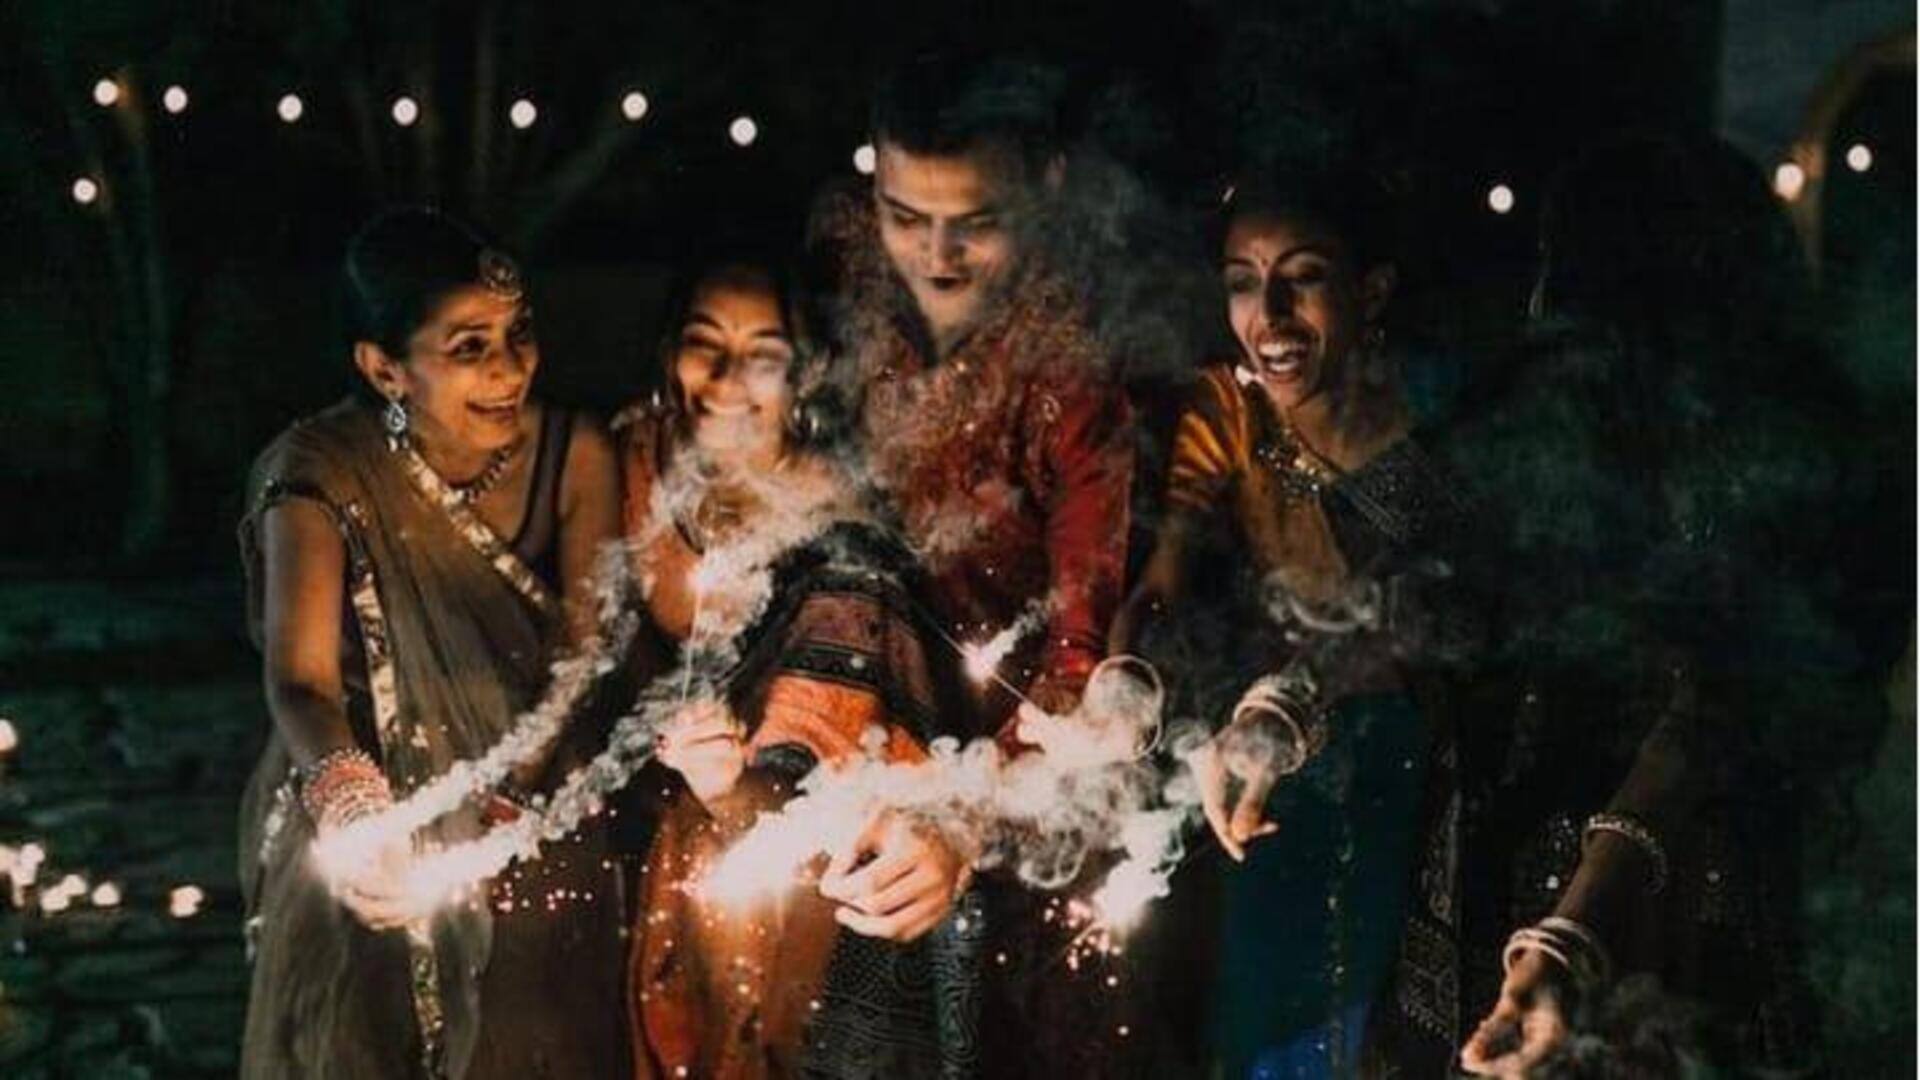 5 days Diwali: ఐదు రోజుల దీపావళి.. ఏ రోజున ఏం చేస్తారో తెలుసా?